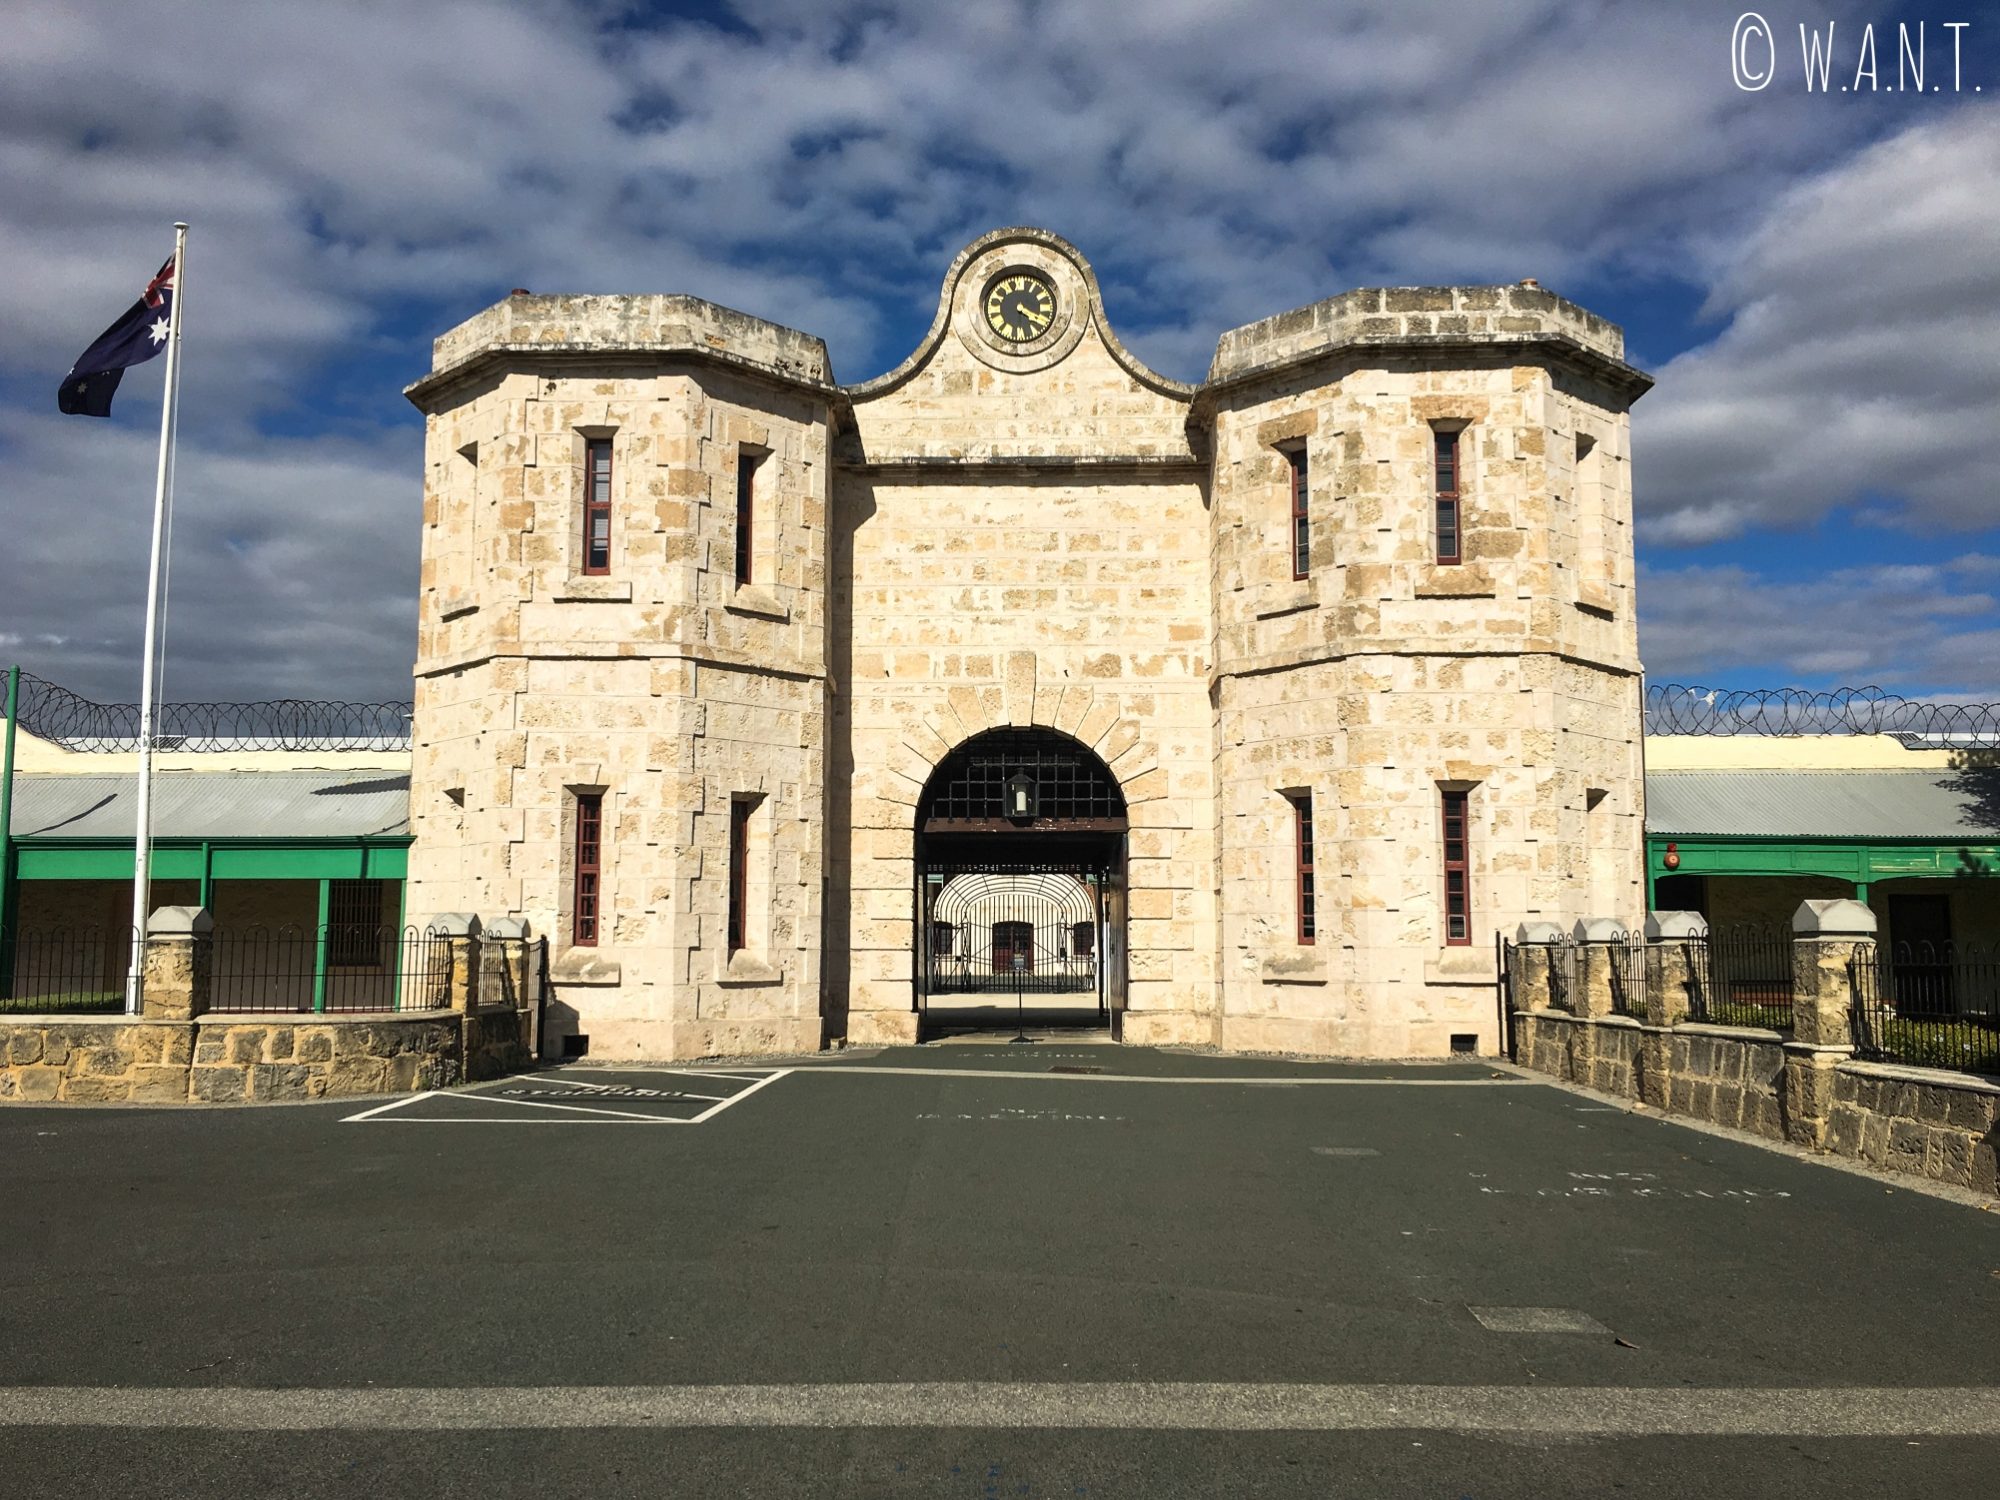 Voici l'entrée de la prison de Perth, classée à l'Unesco et reconvertie en musée mémorial